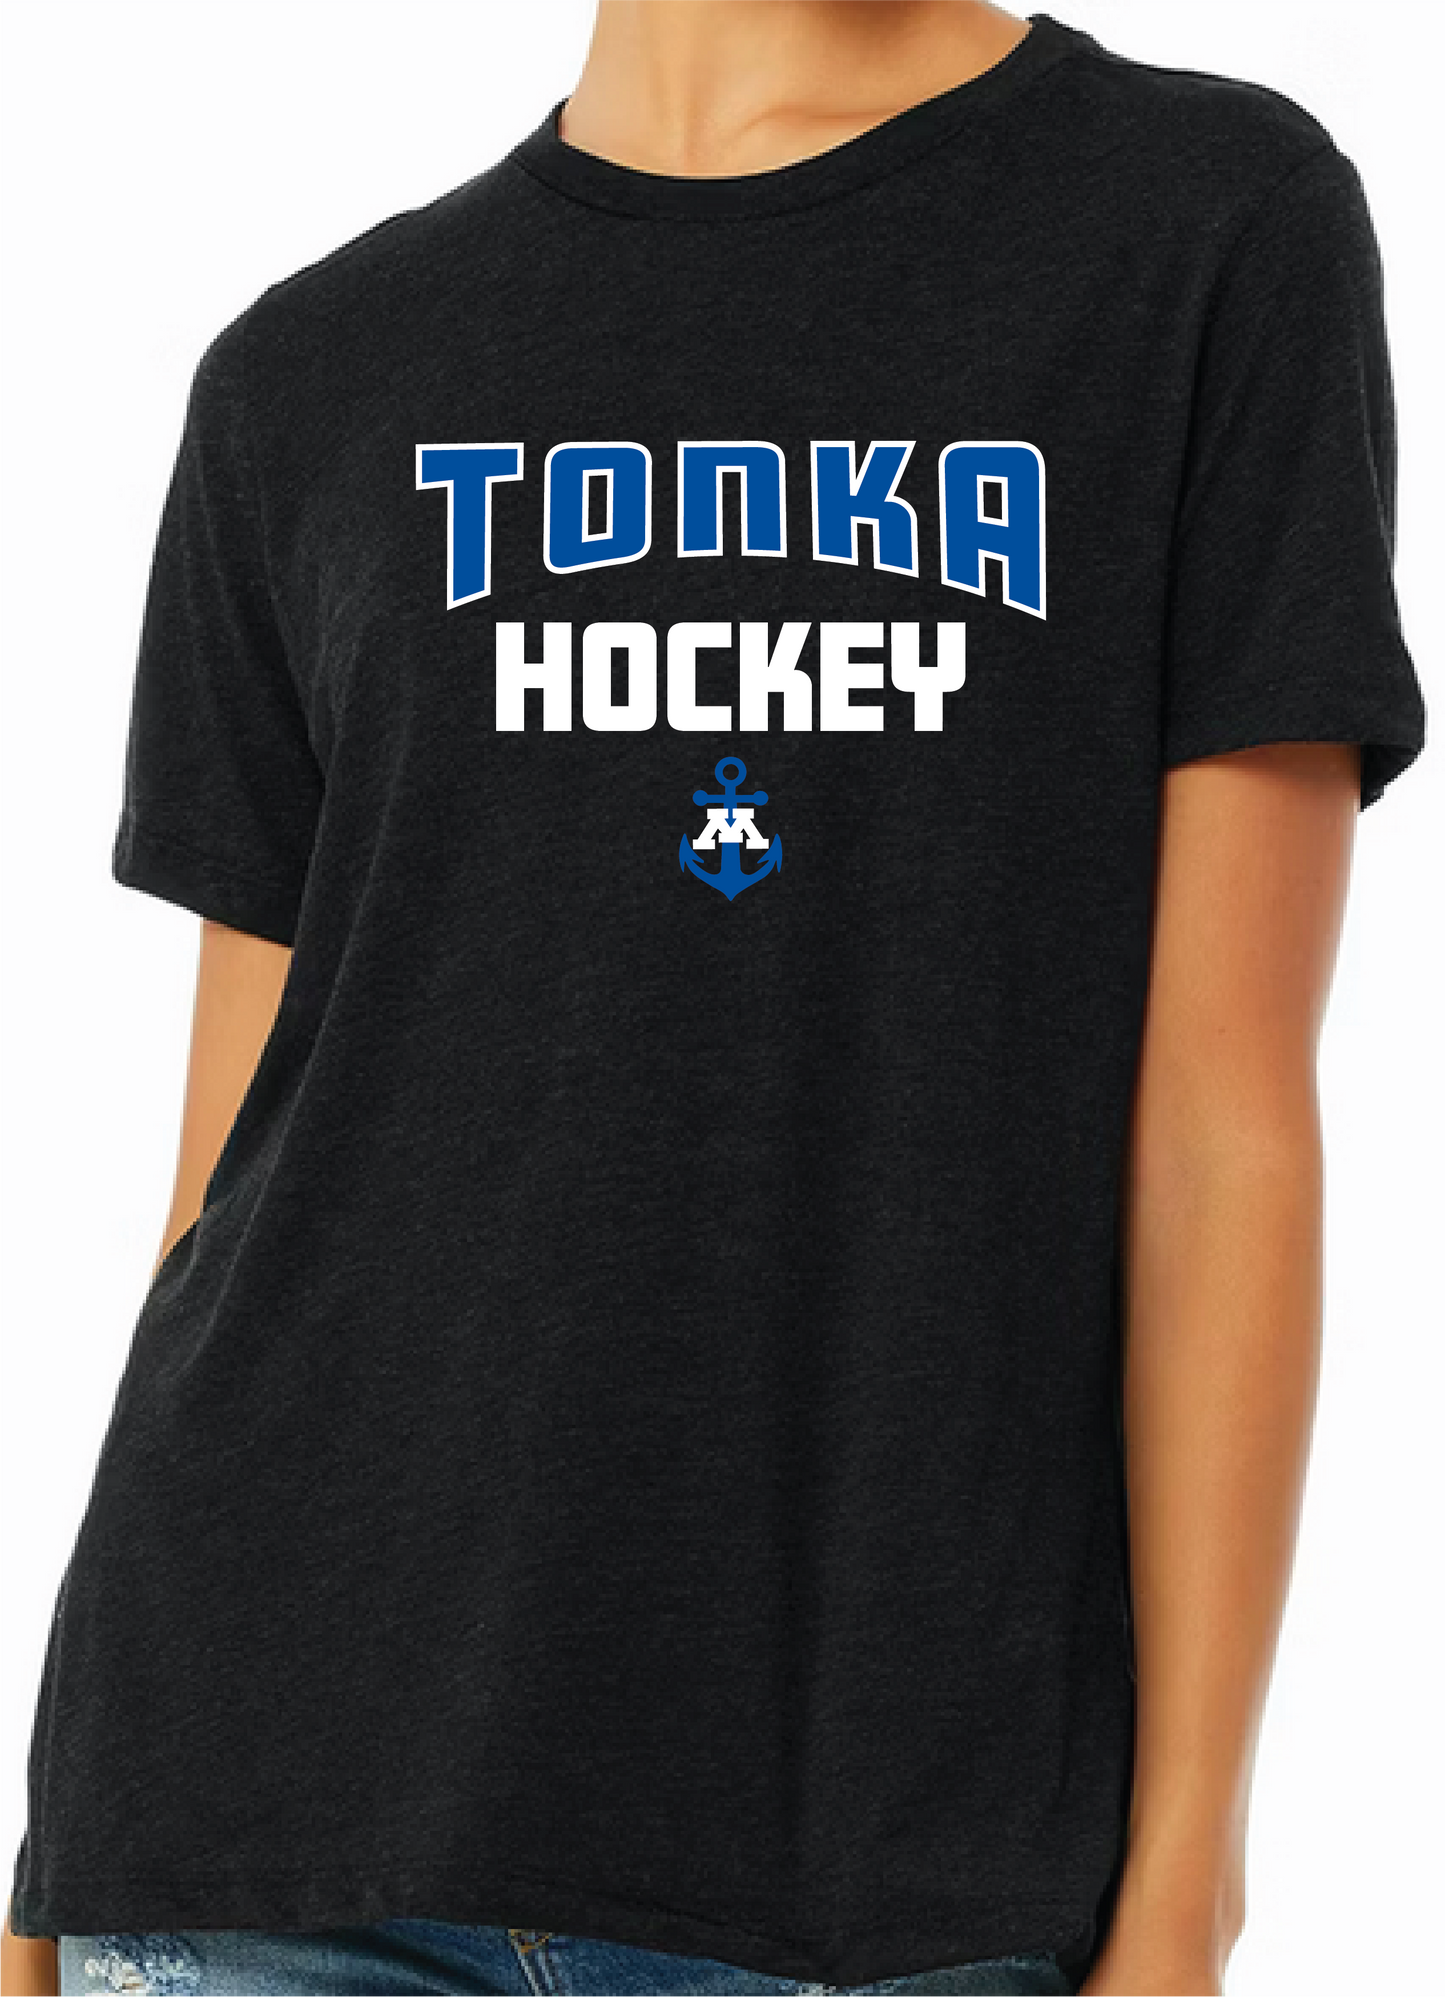 Tonka Hockey Small Anchor Heather Black